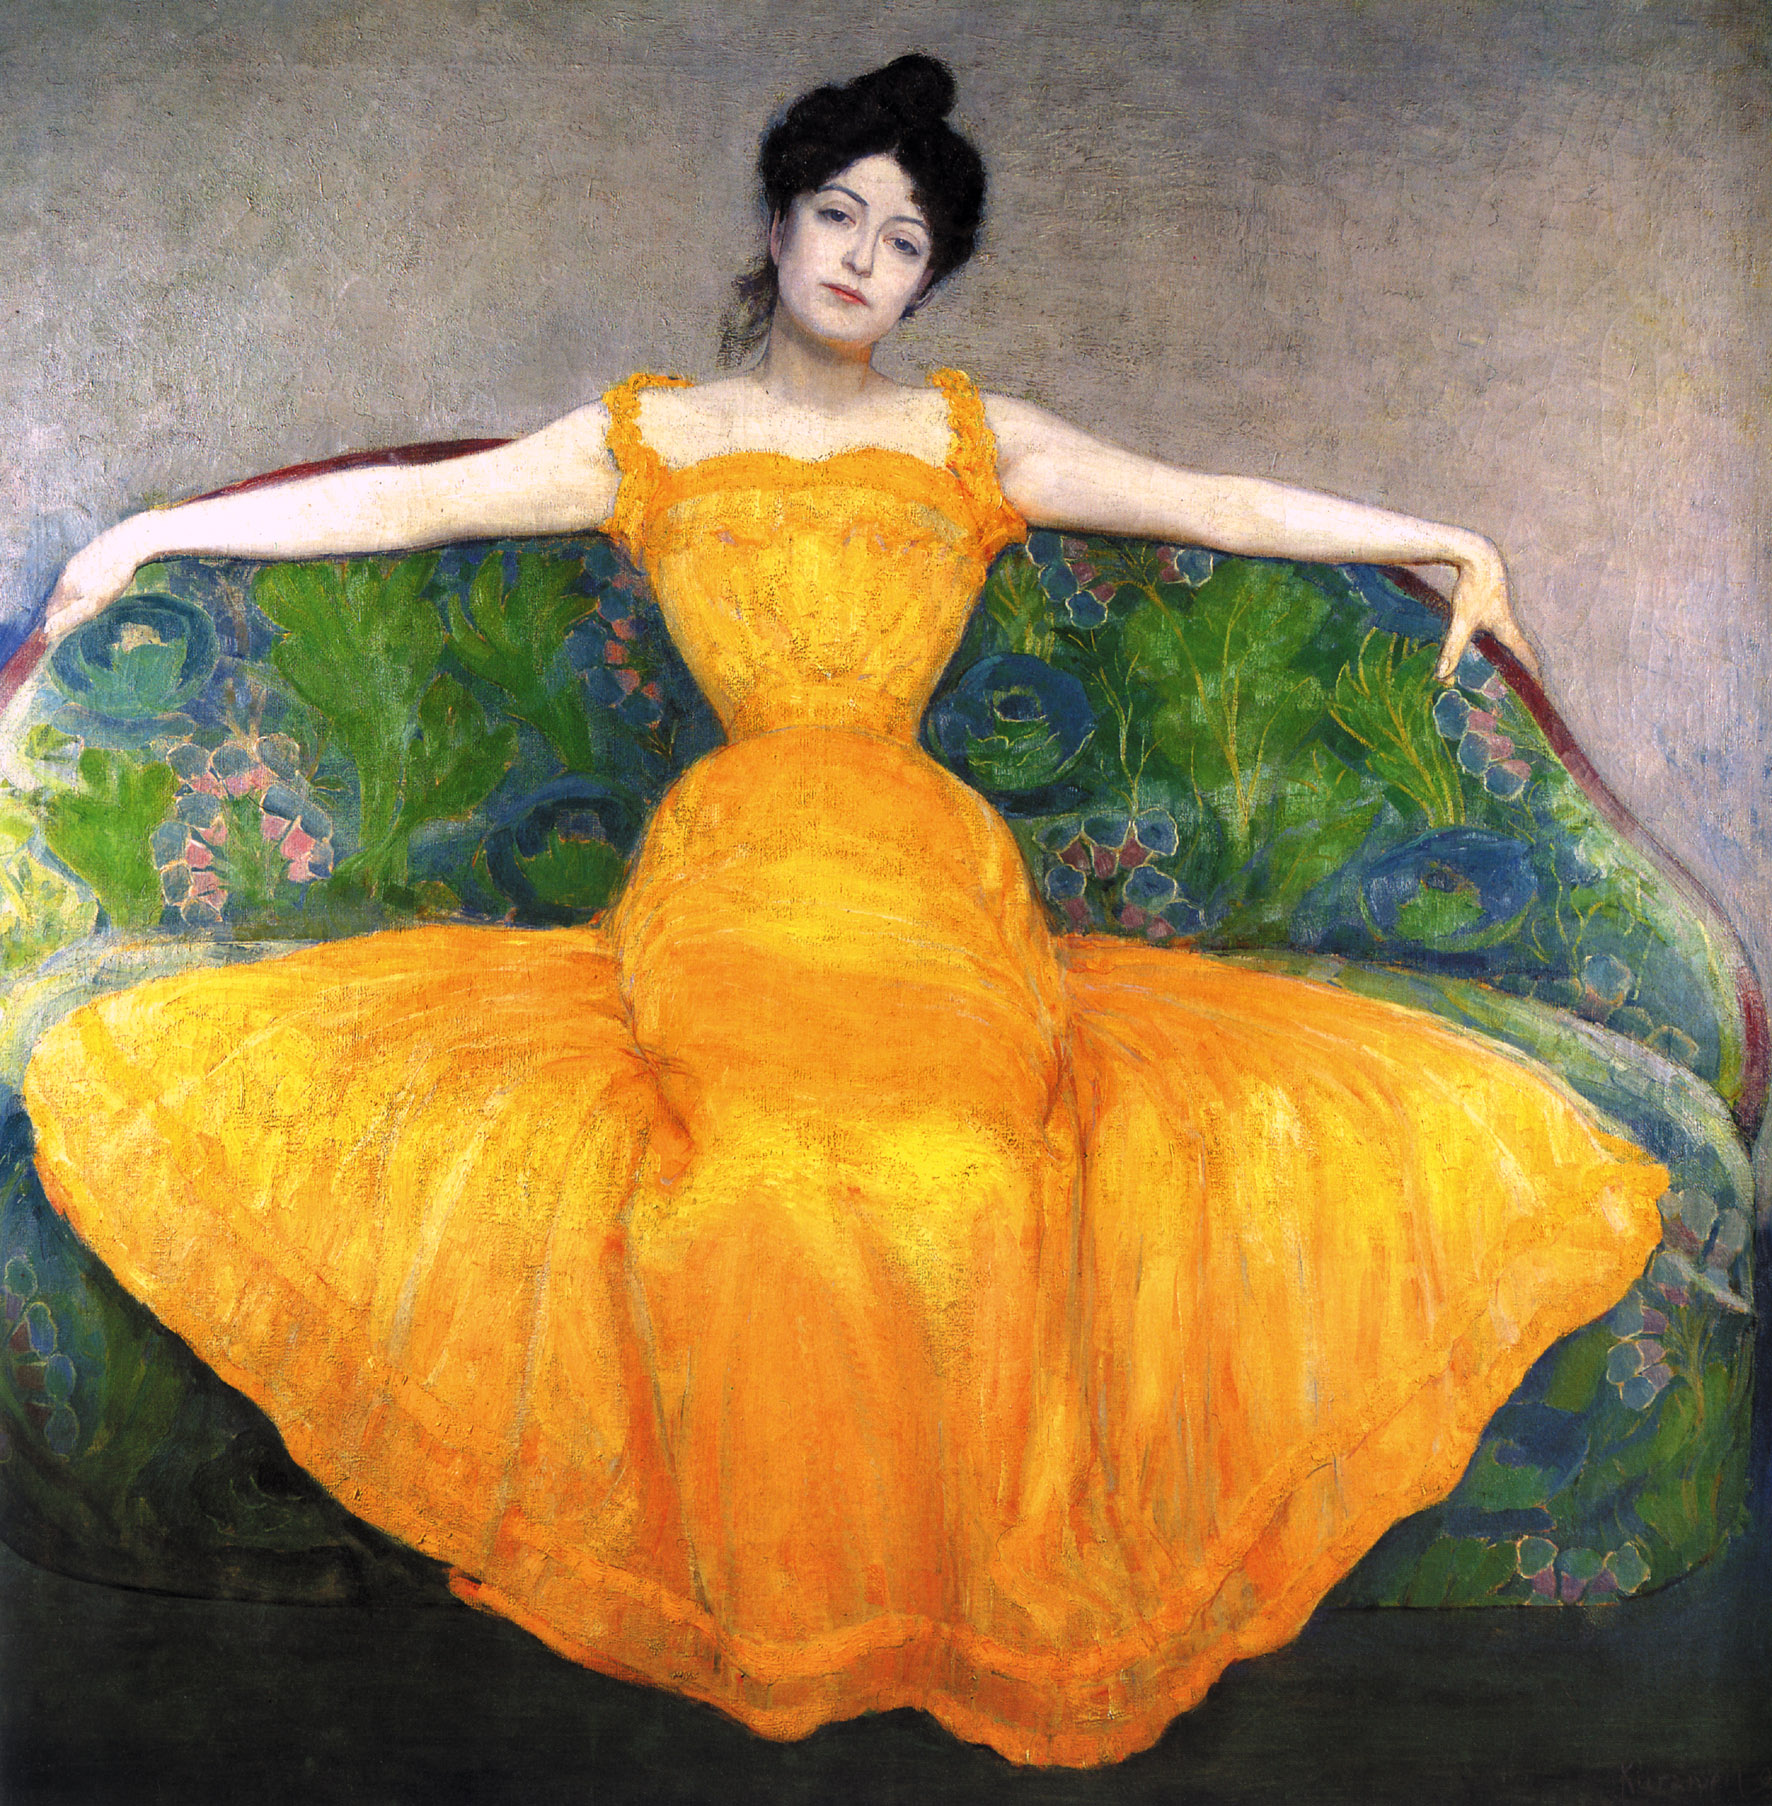 黃衣女子 by Max Kurzweil - 1899 